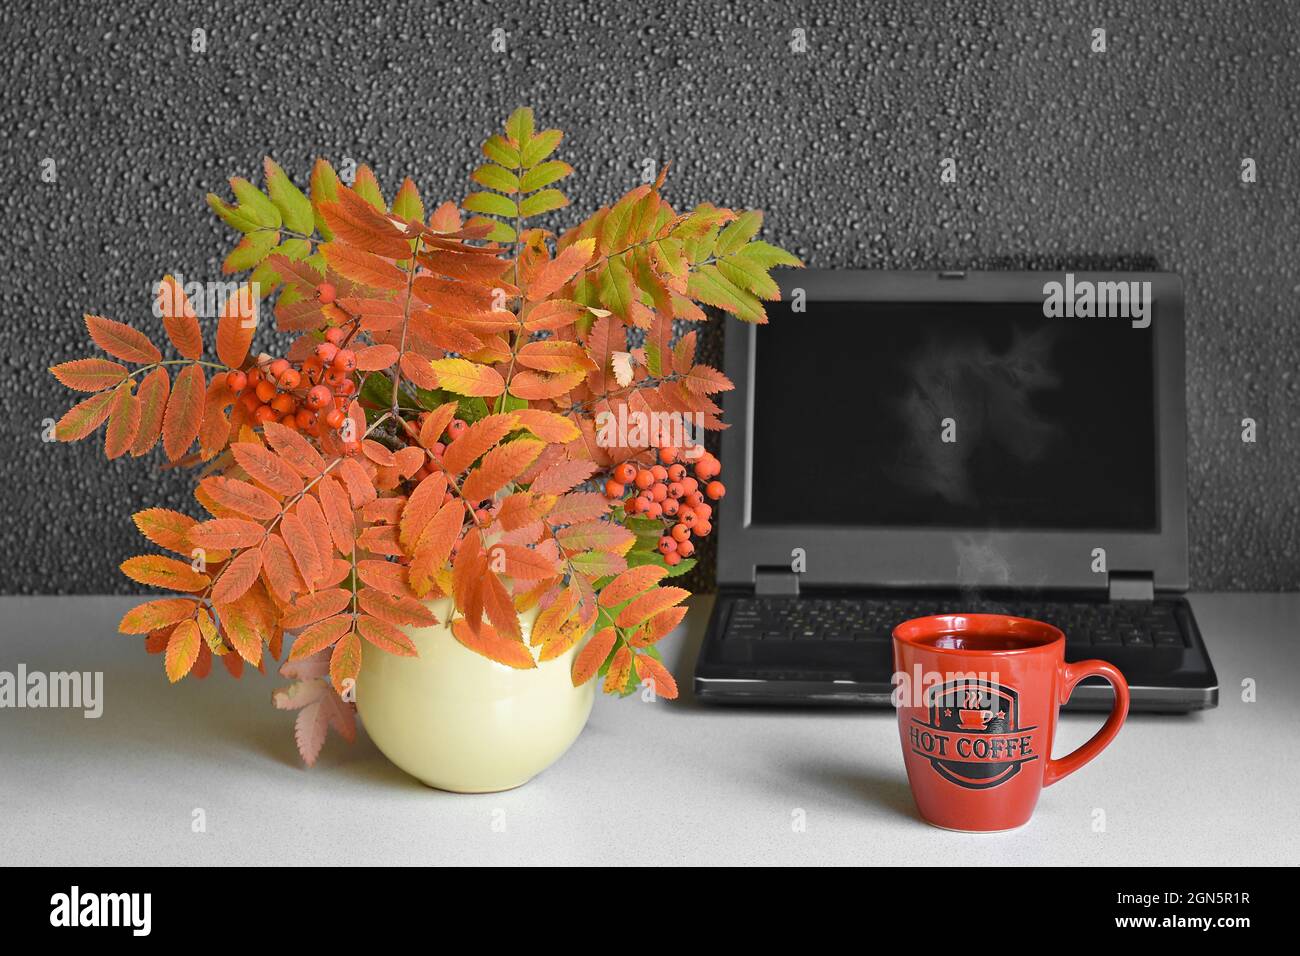 Une tasse de café chaud à la vapeur, sur le fond d'un ordinateur et d'un bouquet de feuilles d'automne Banque D'Images